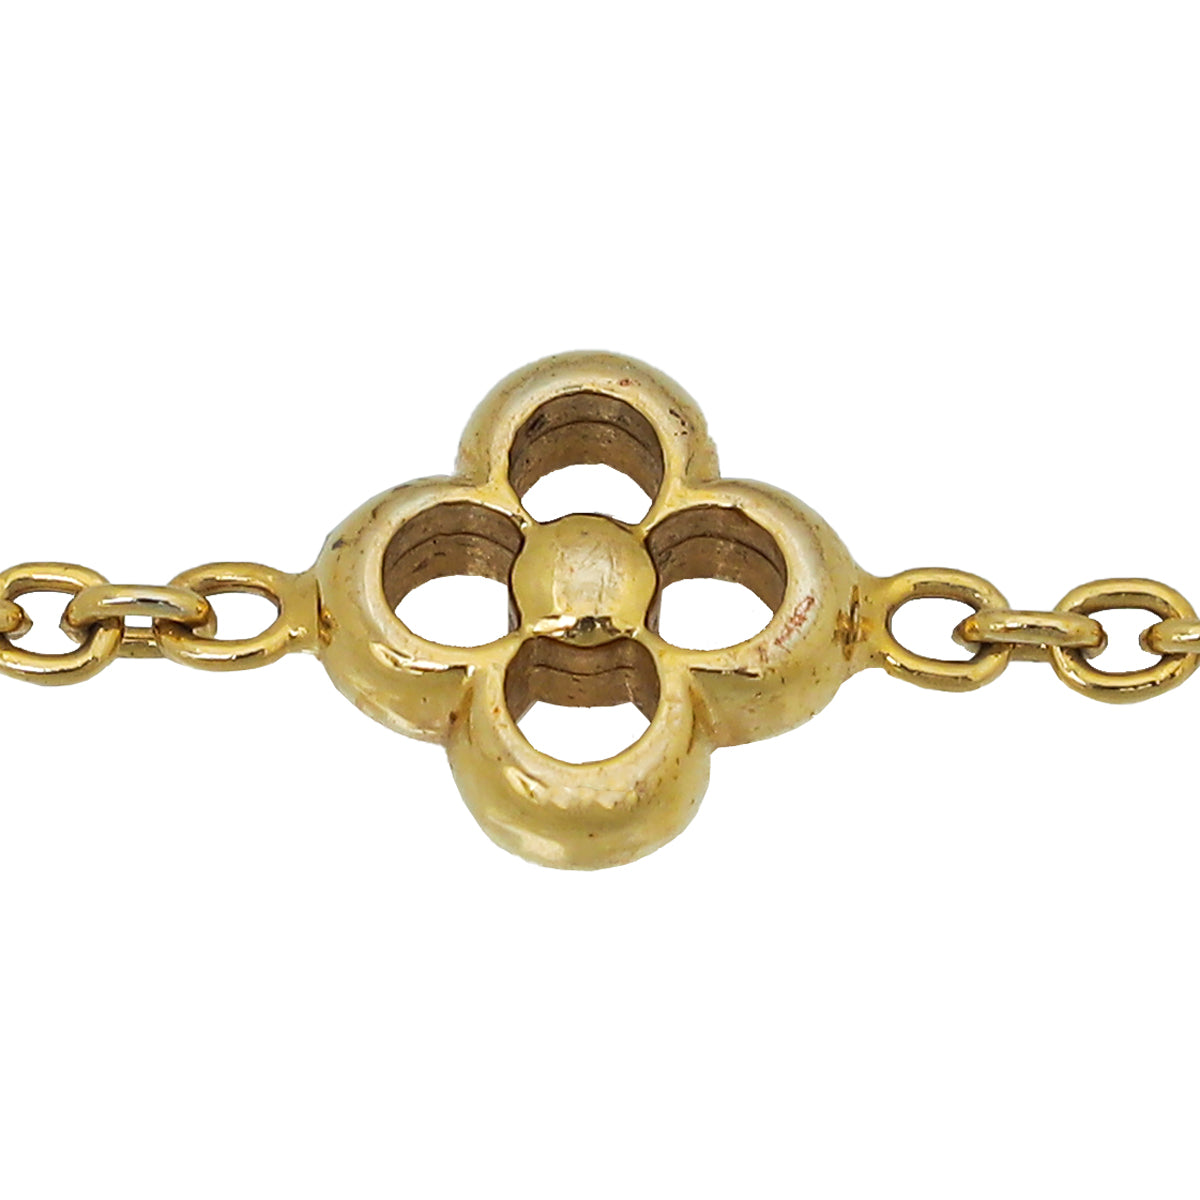 Louis Vuitton Gold Tone Flower Full Bracelet